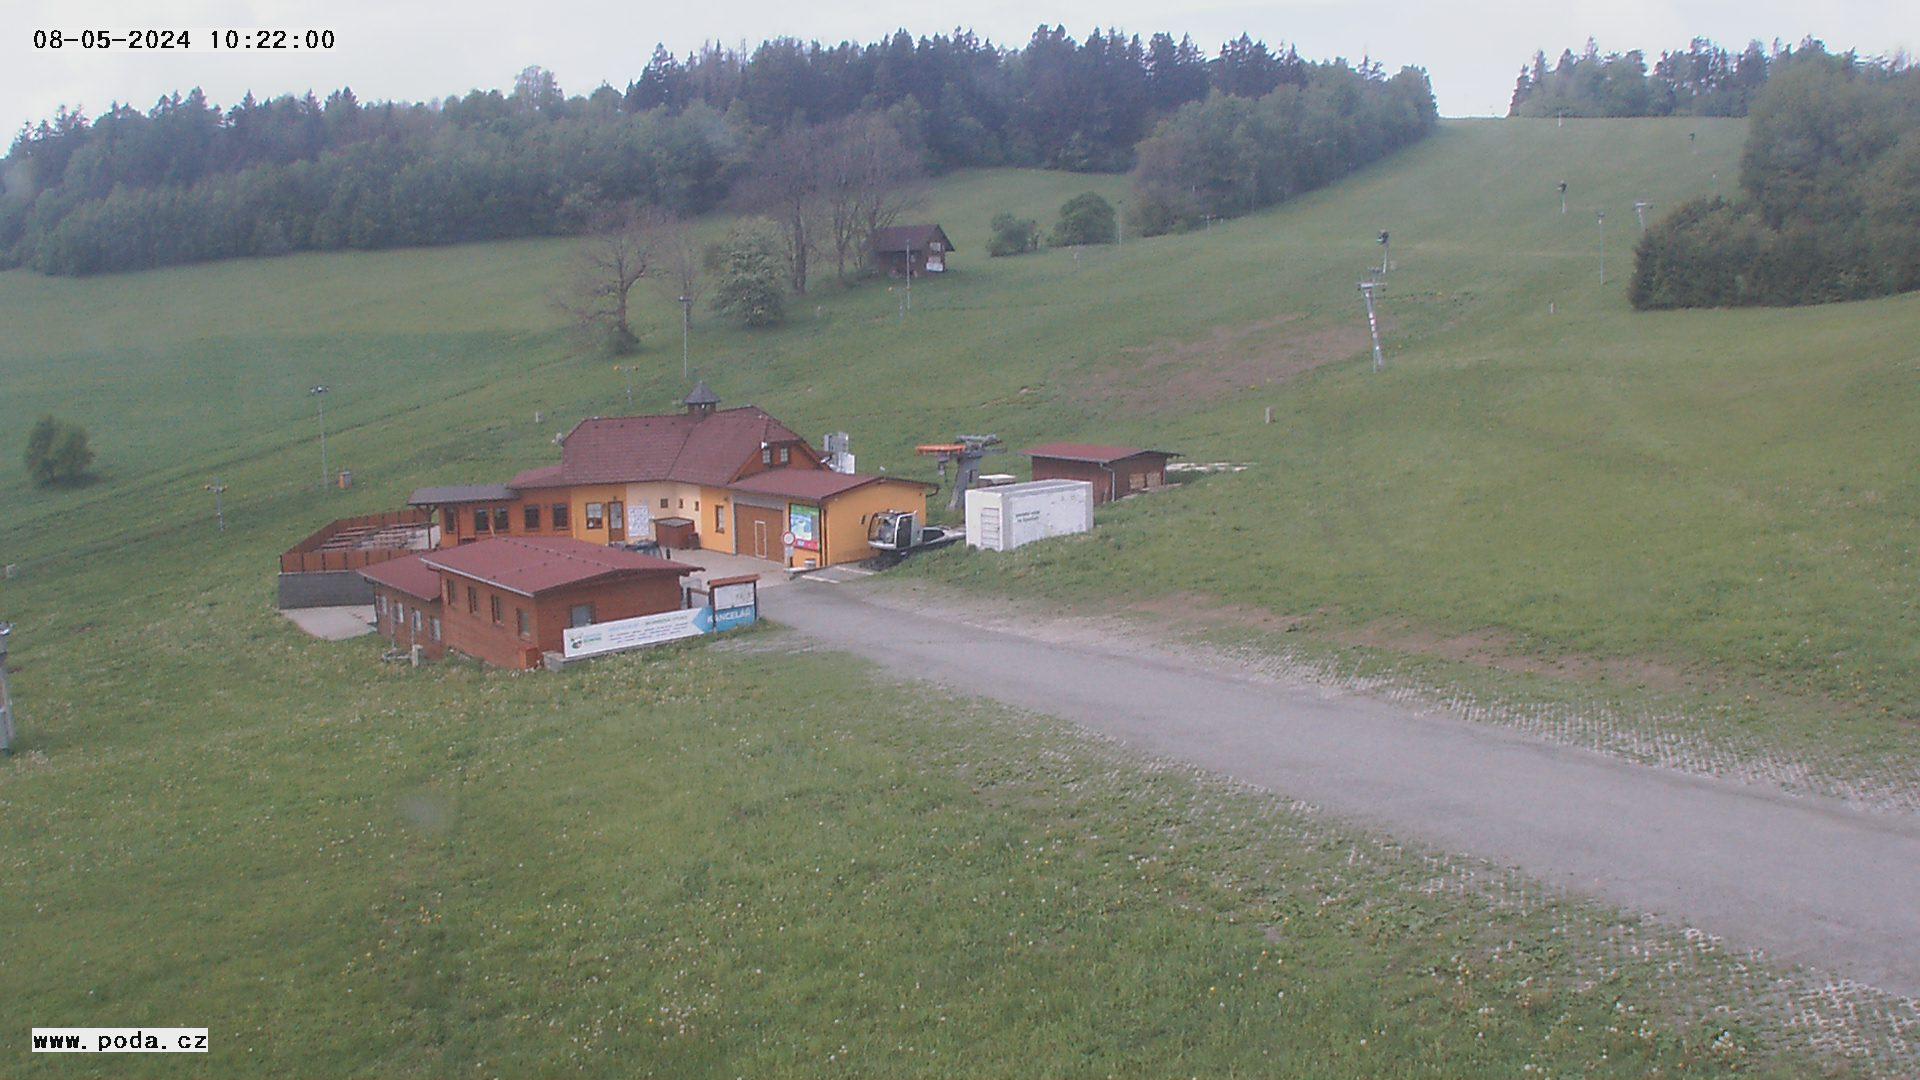 Olešnice na Moravě - aktuální pohled z webkamery